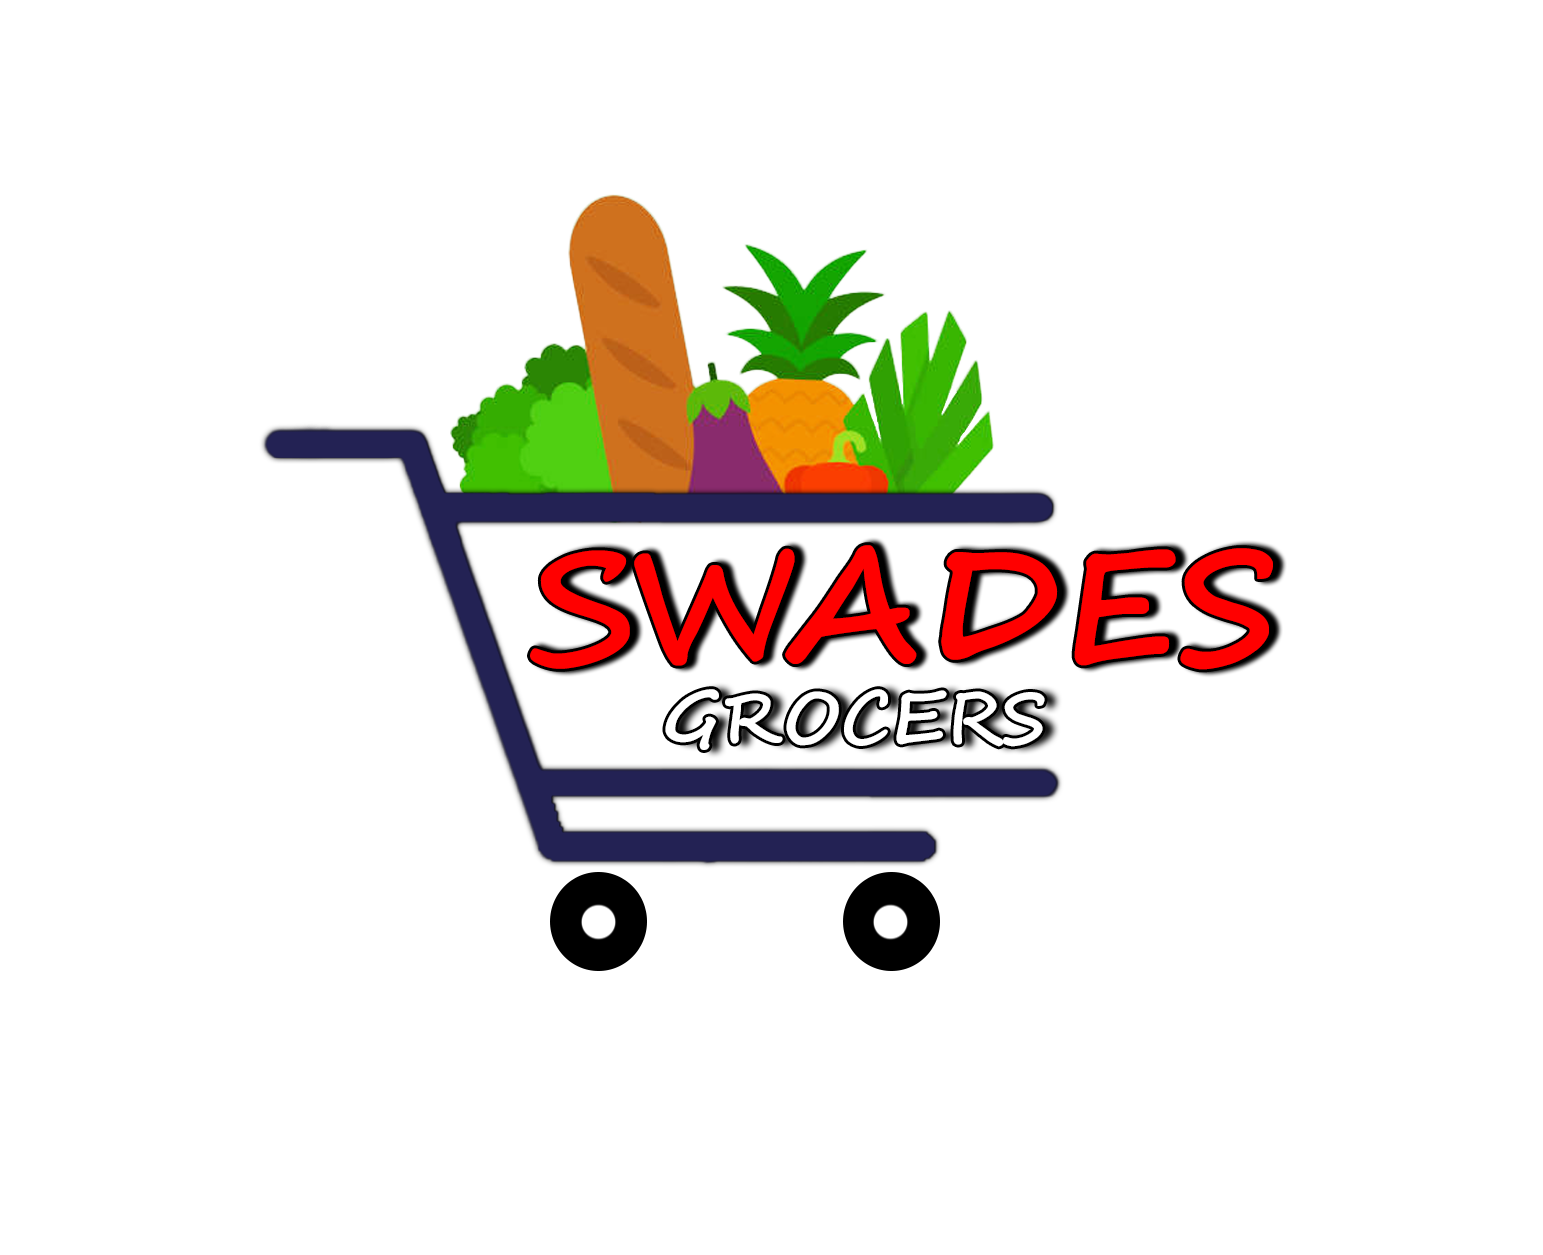 swades Grocers Transparent Logo (1)